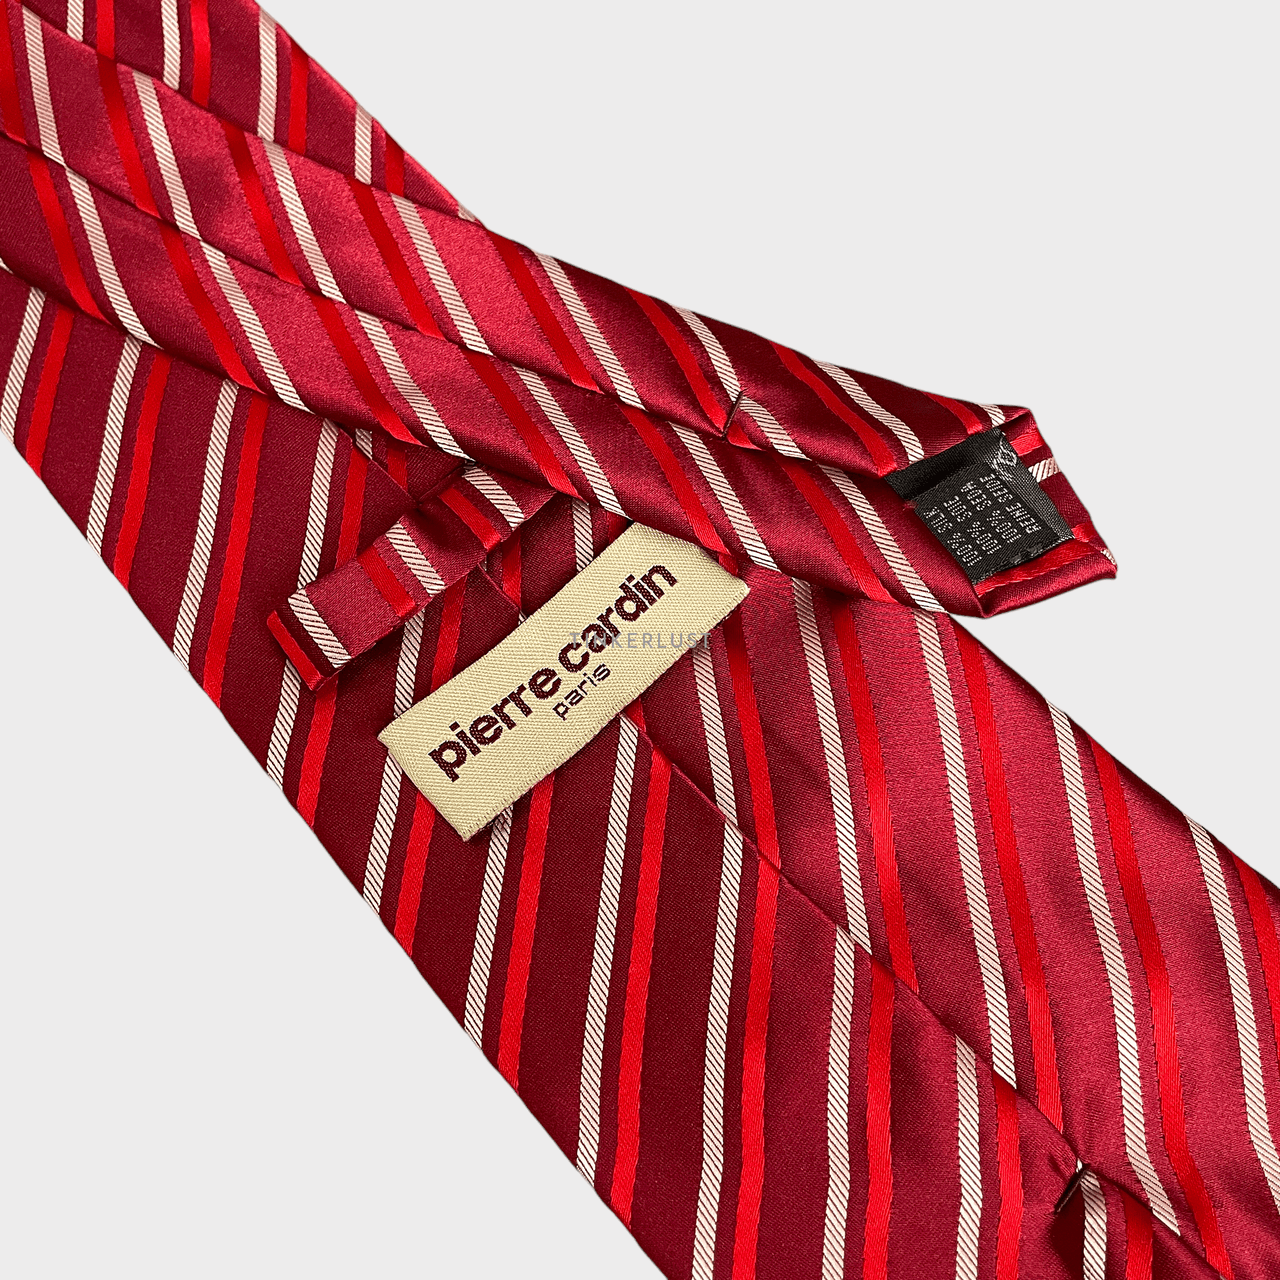 Pierre Cardin Red Stripe Tie